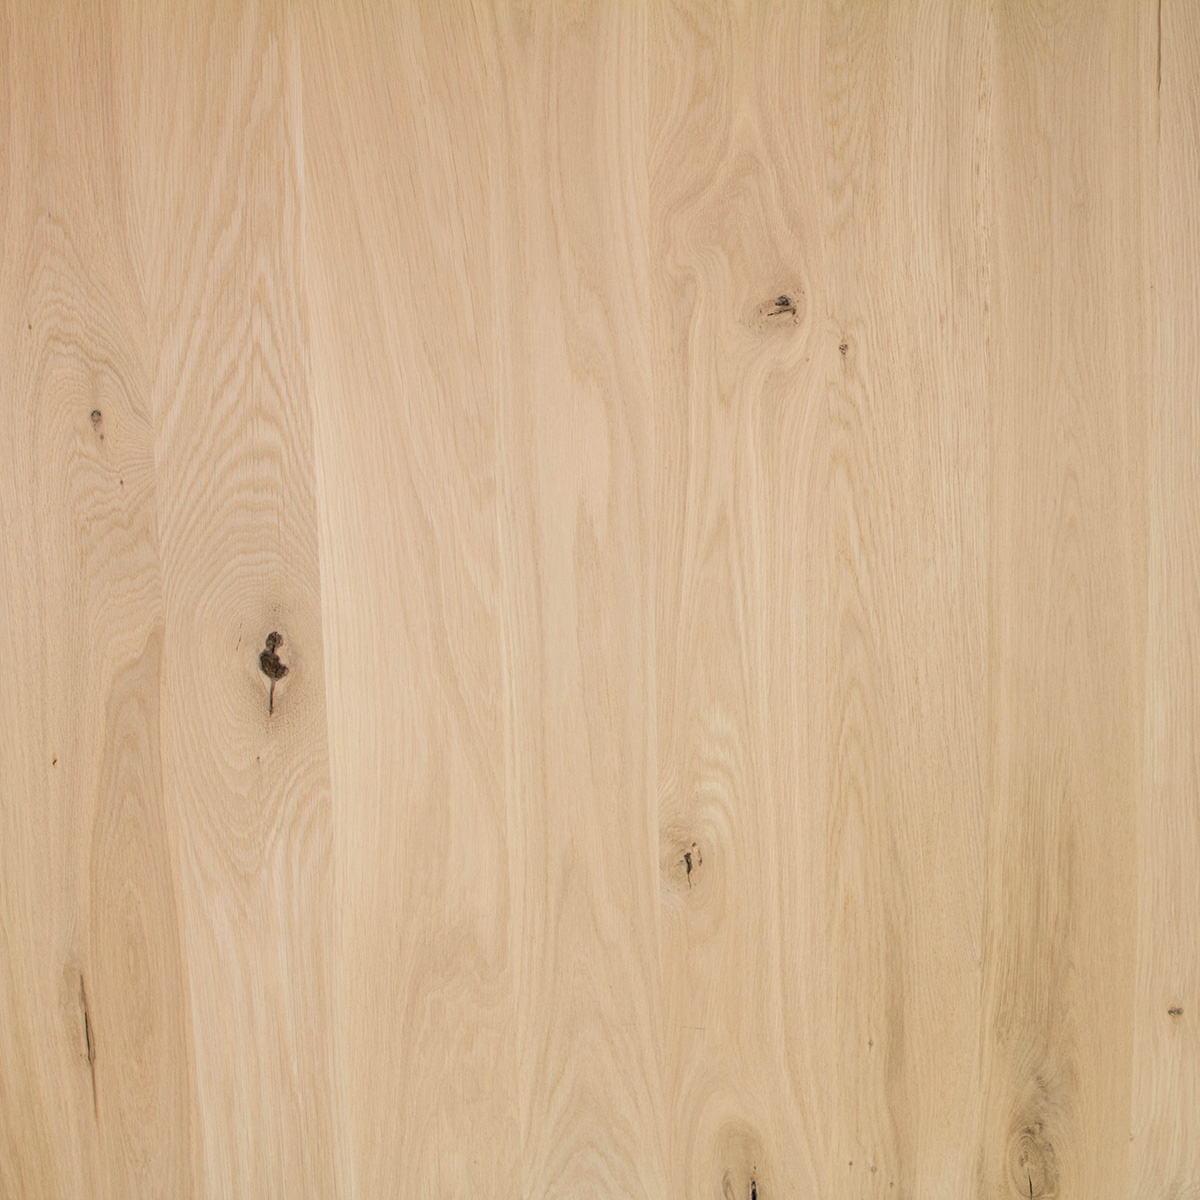  Arbeitsplatte Eiche massiv - 2,7 cm dick - Breite Lamellen - 121 cm breit - verschiedene Längen - Eichenholz rustikal - Massivholz - Verleimt & künstlich getrocknet (HF 8-12%)